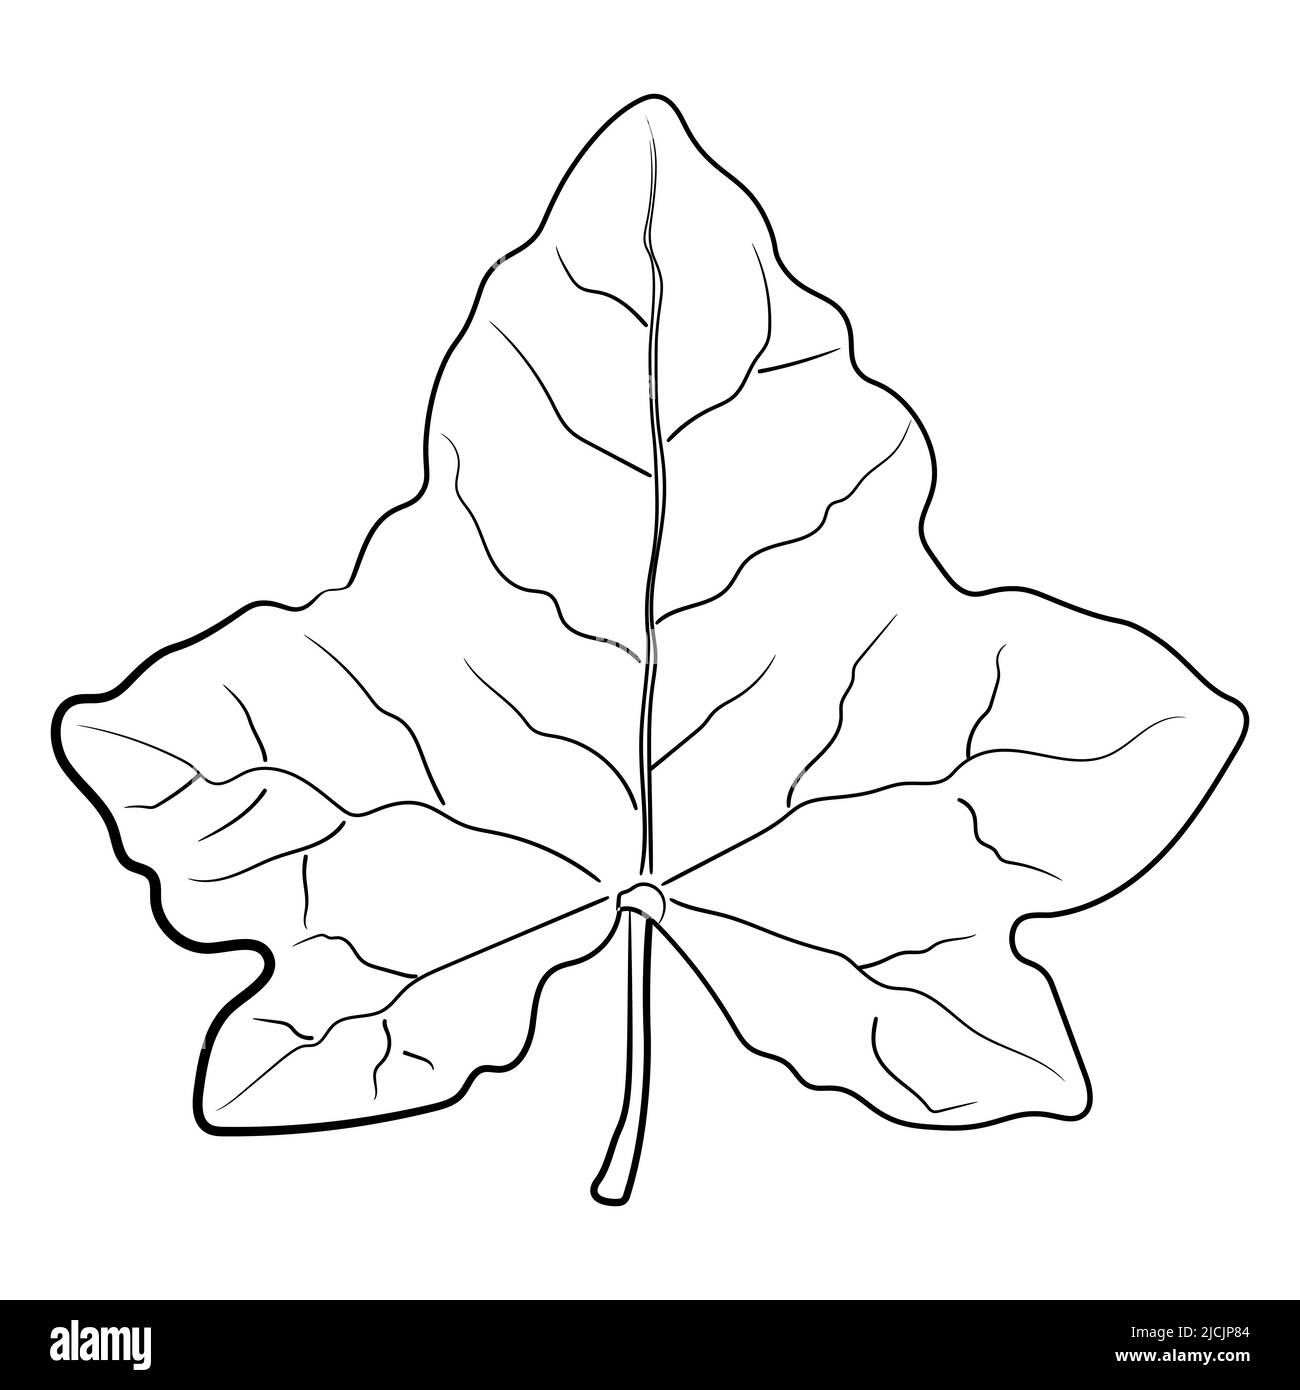 Leaf Sketch Images - Free Download on Freepik